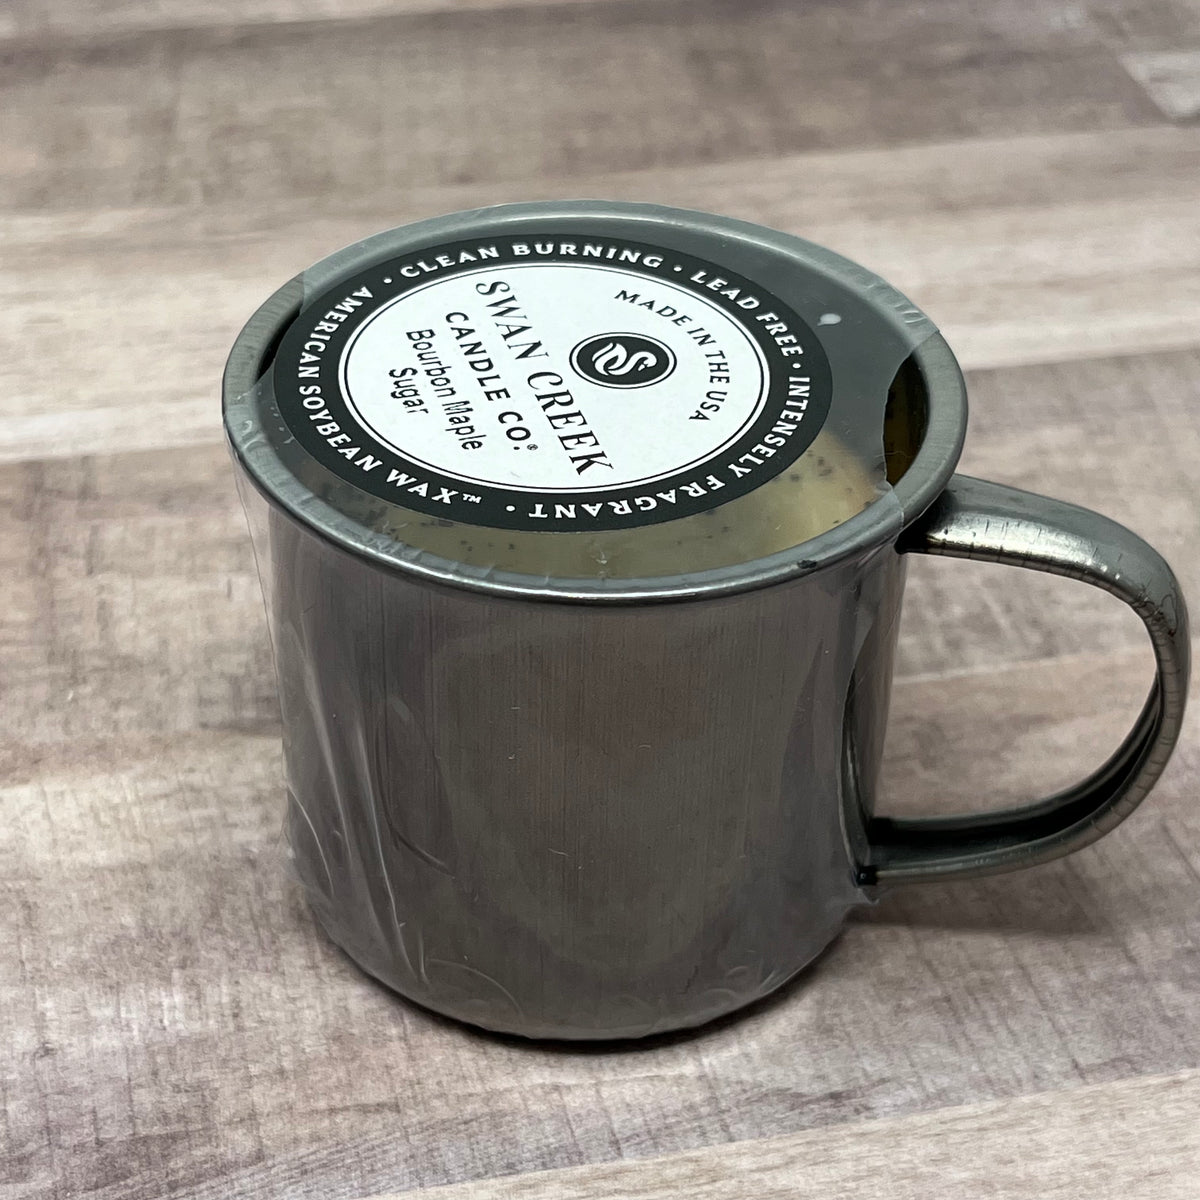 3.5 oz Enamel Mini Mug Candle